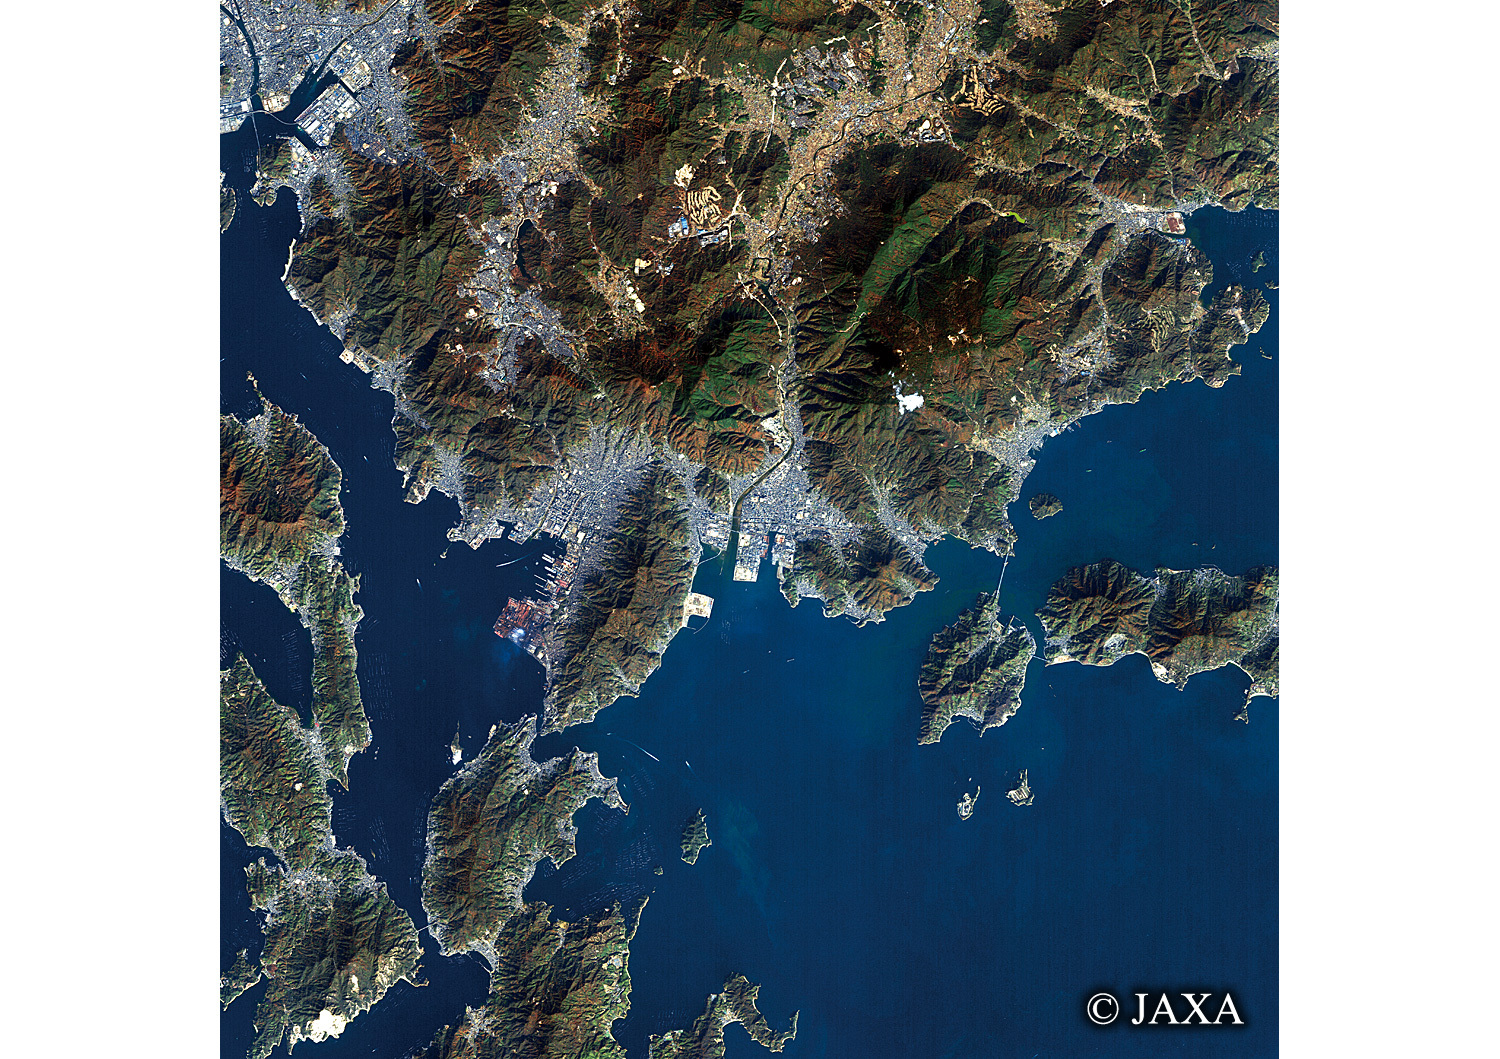 だいちから見た日本の都市 呉市:衛星画像